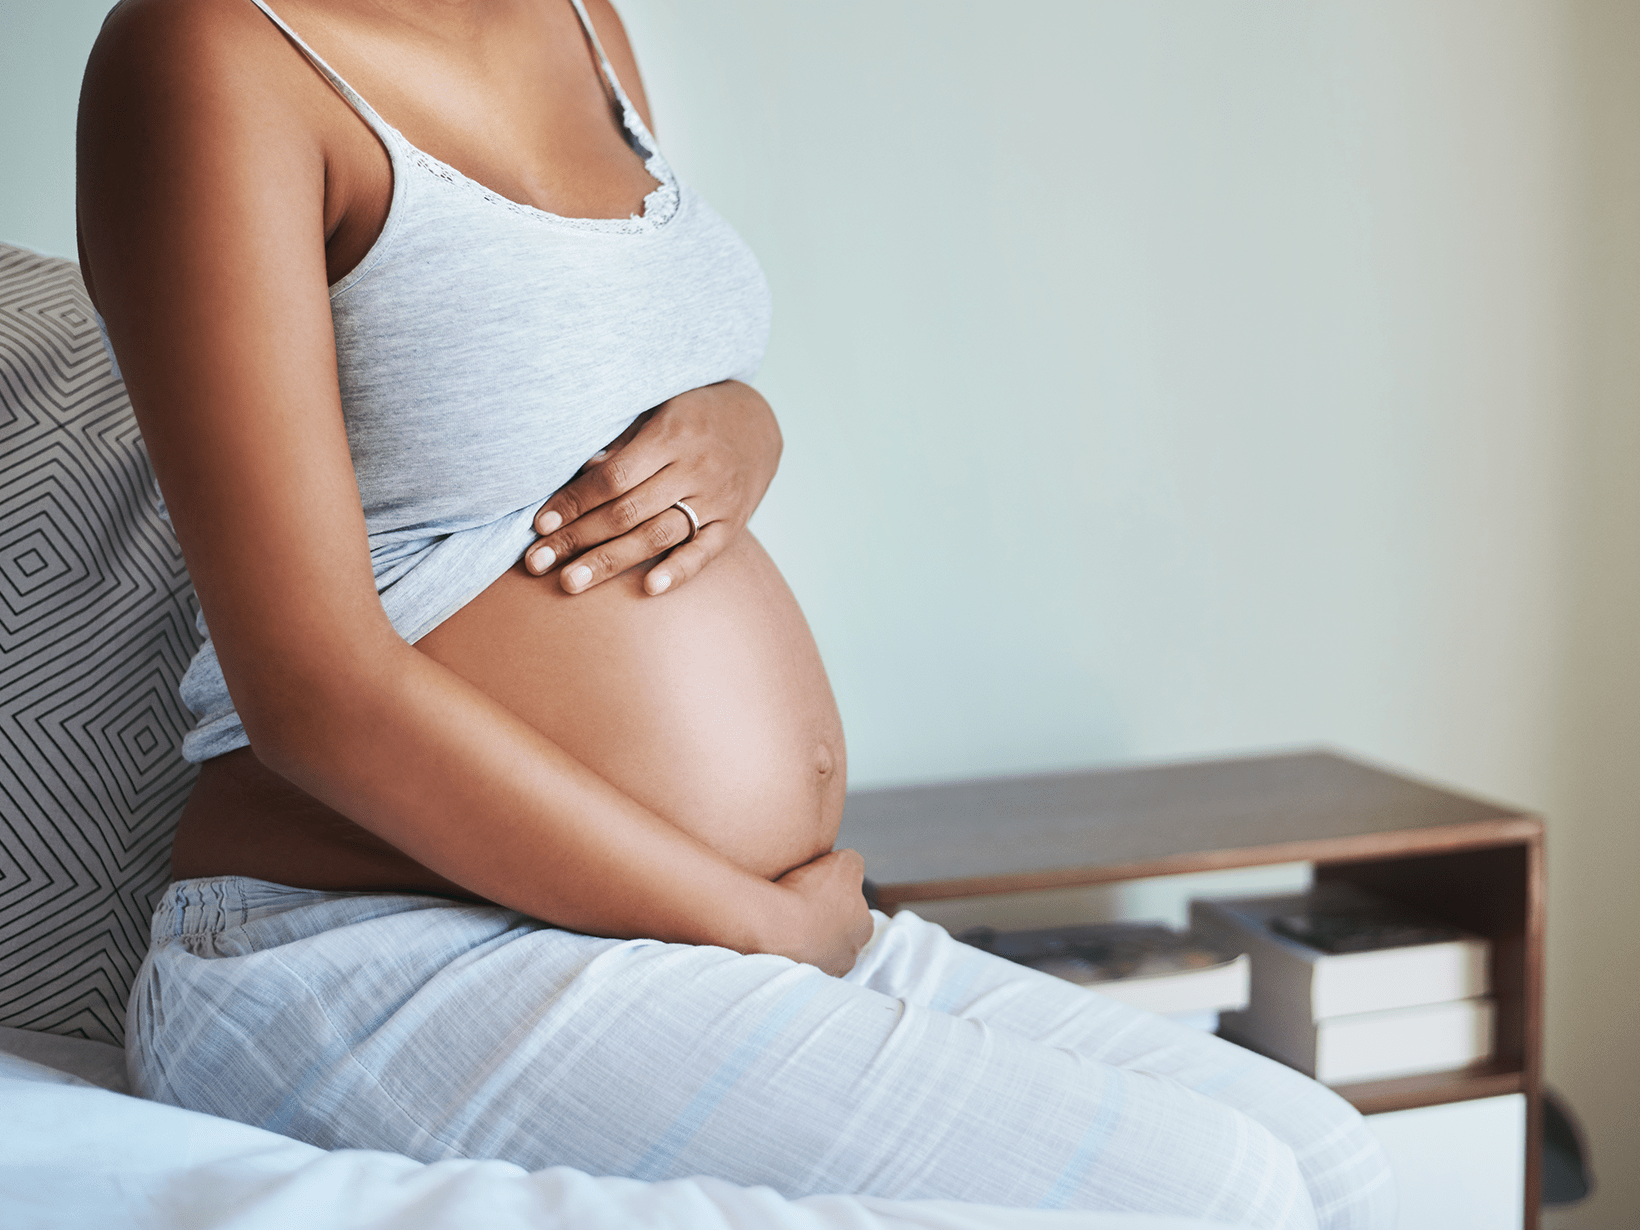 smagliature sulla pancia durante la gravidanza